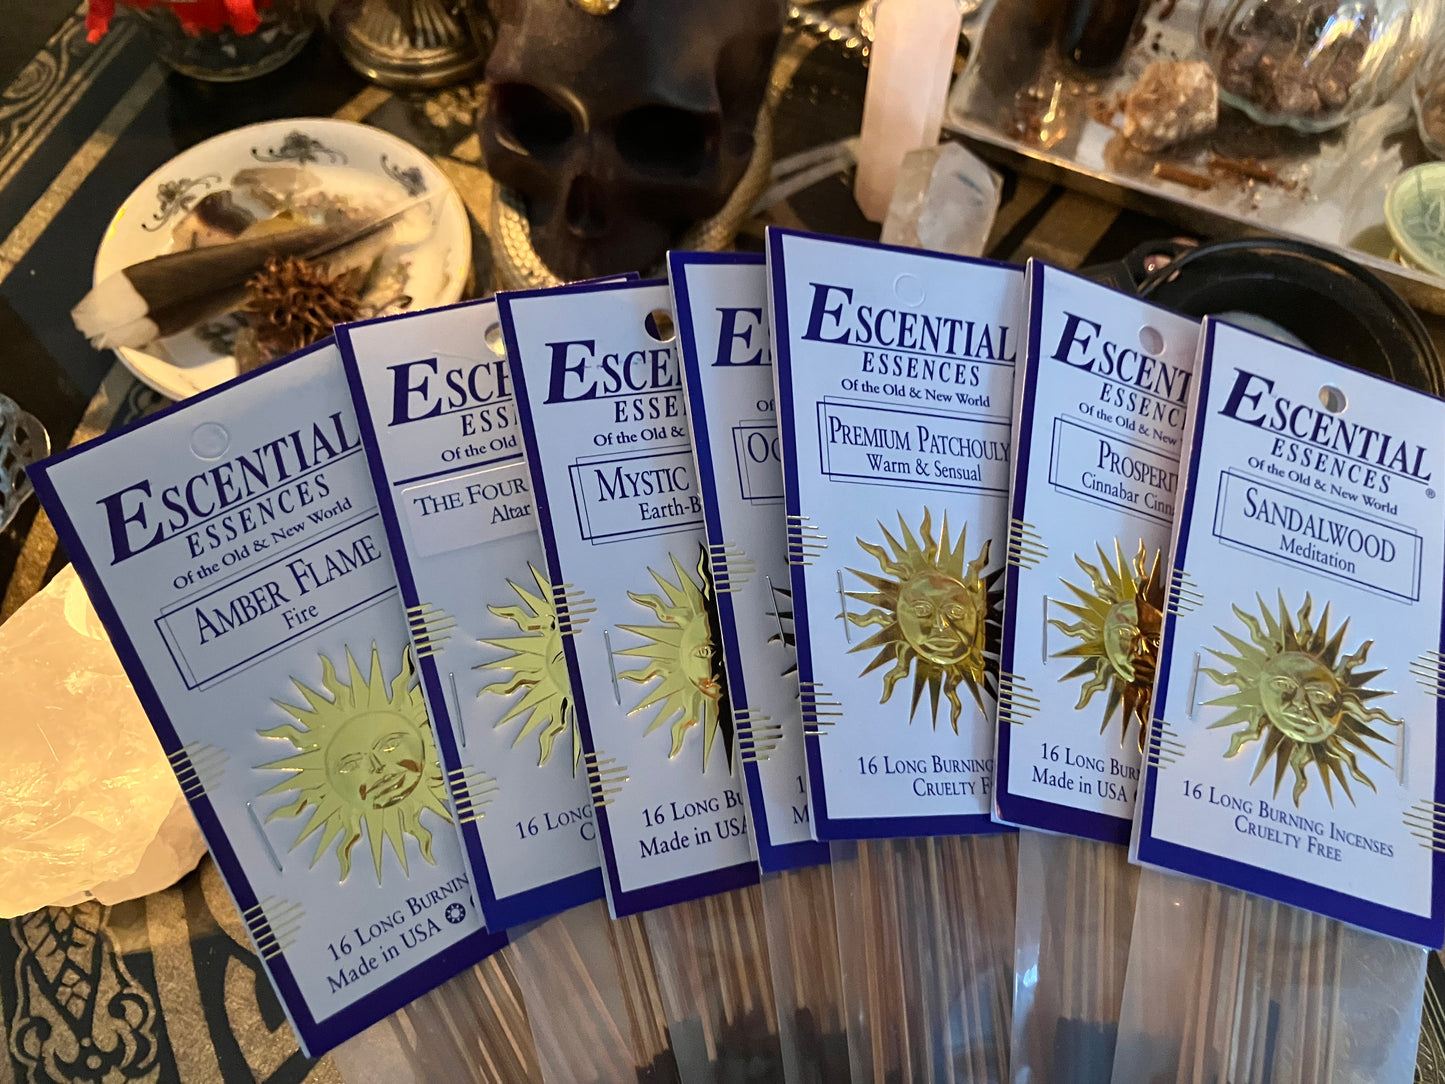 Sanctuary escential essences incense sticks 16 pack